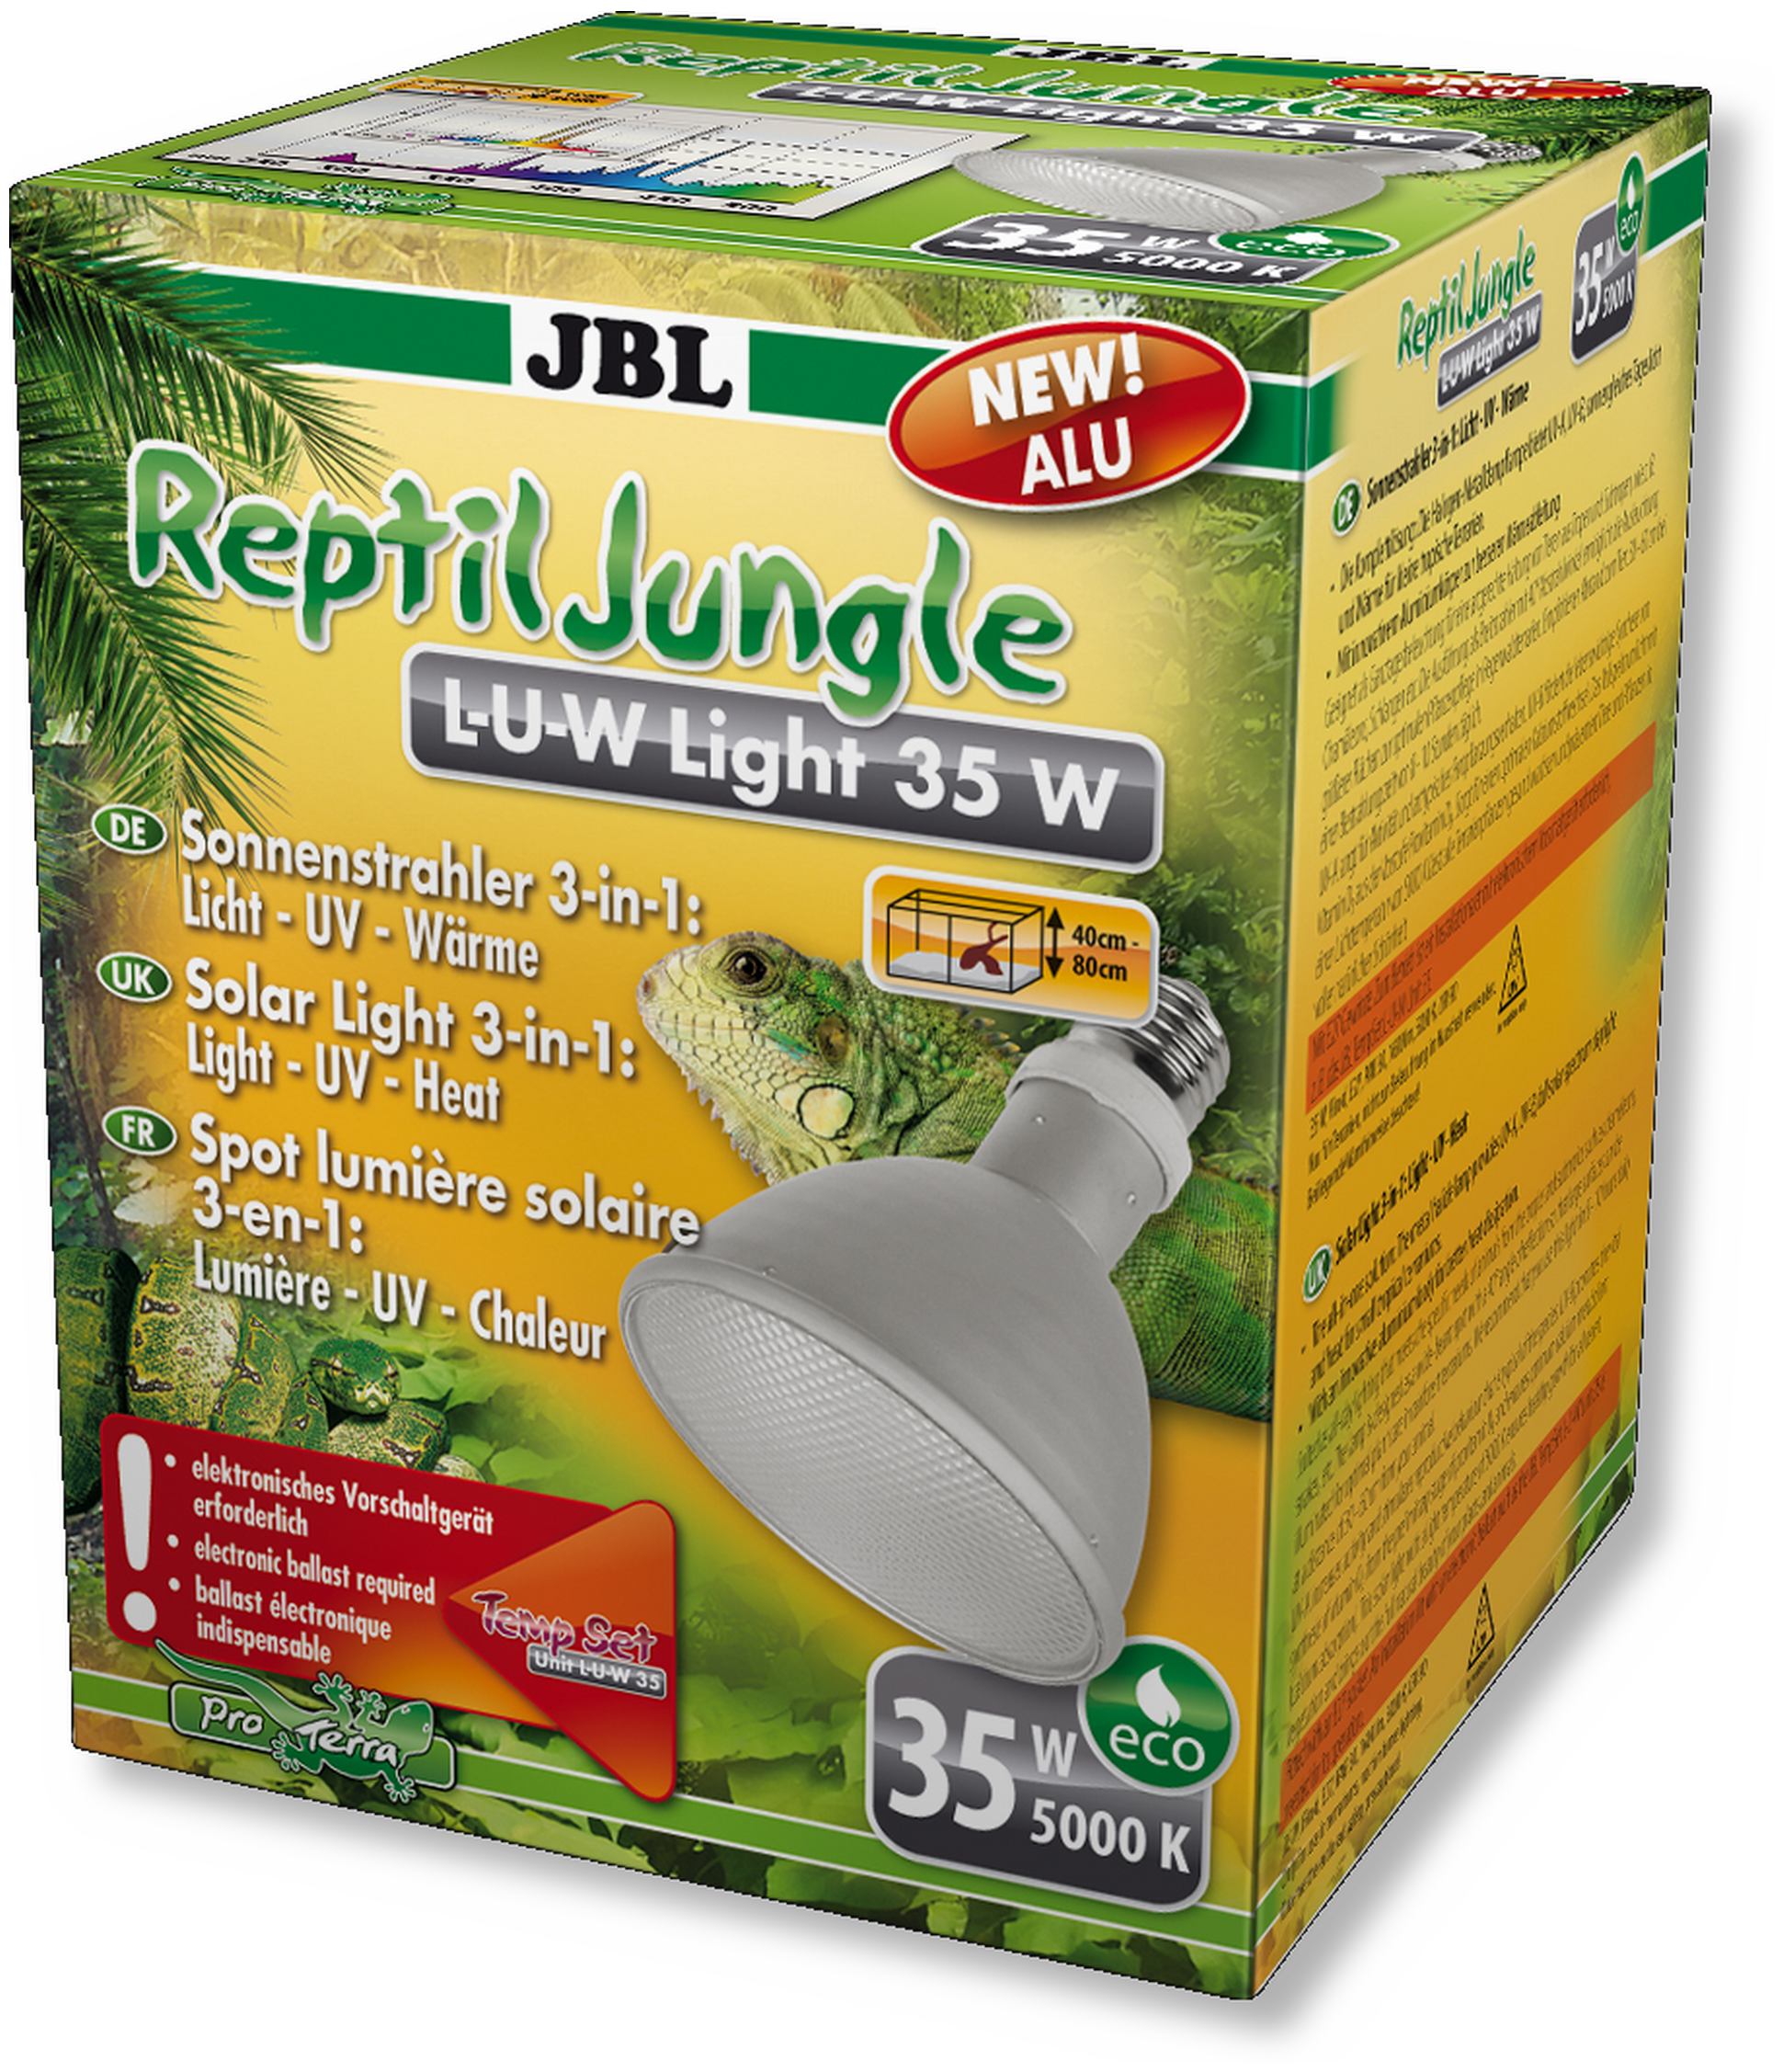 JBL ReptilJungle L-U-W Light 35 Watt-Alu